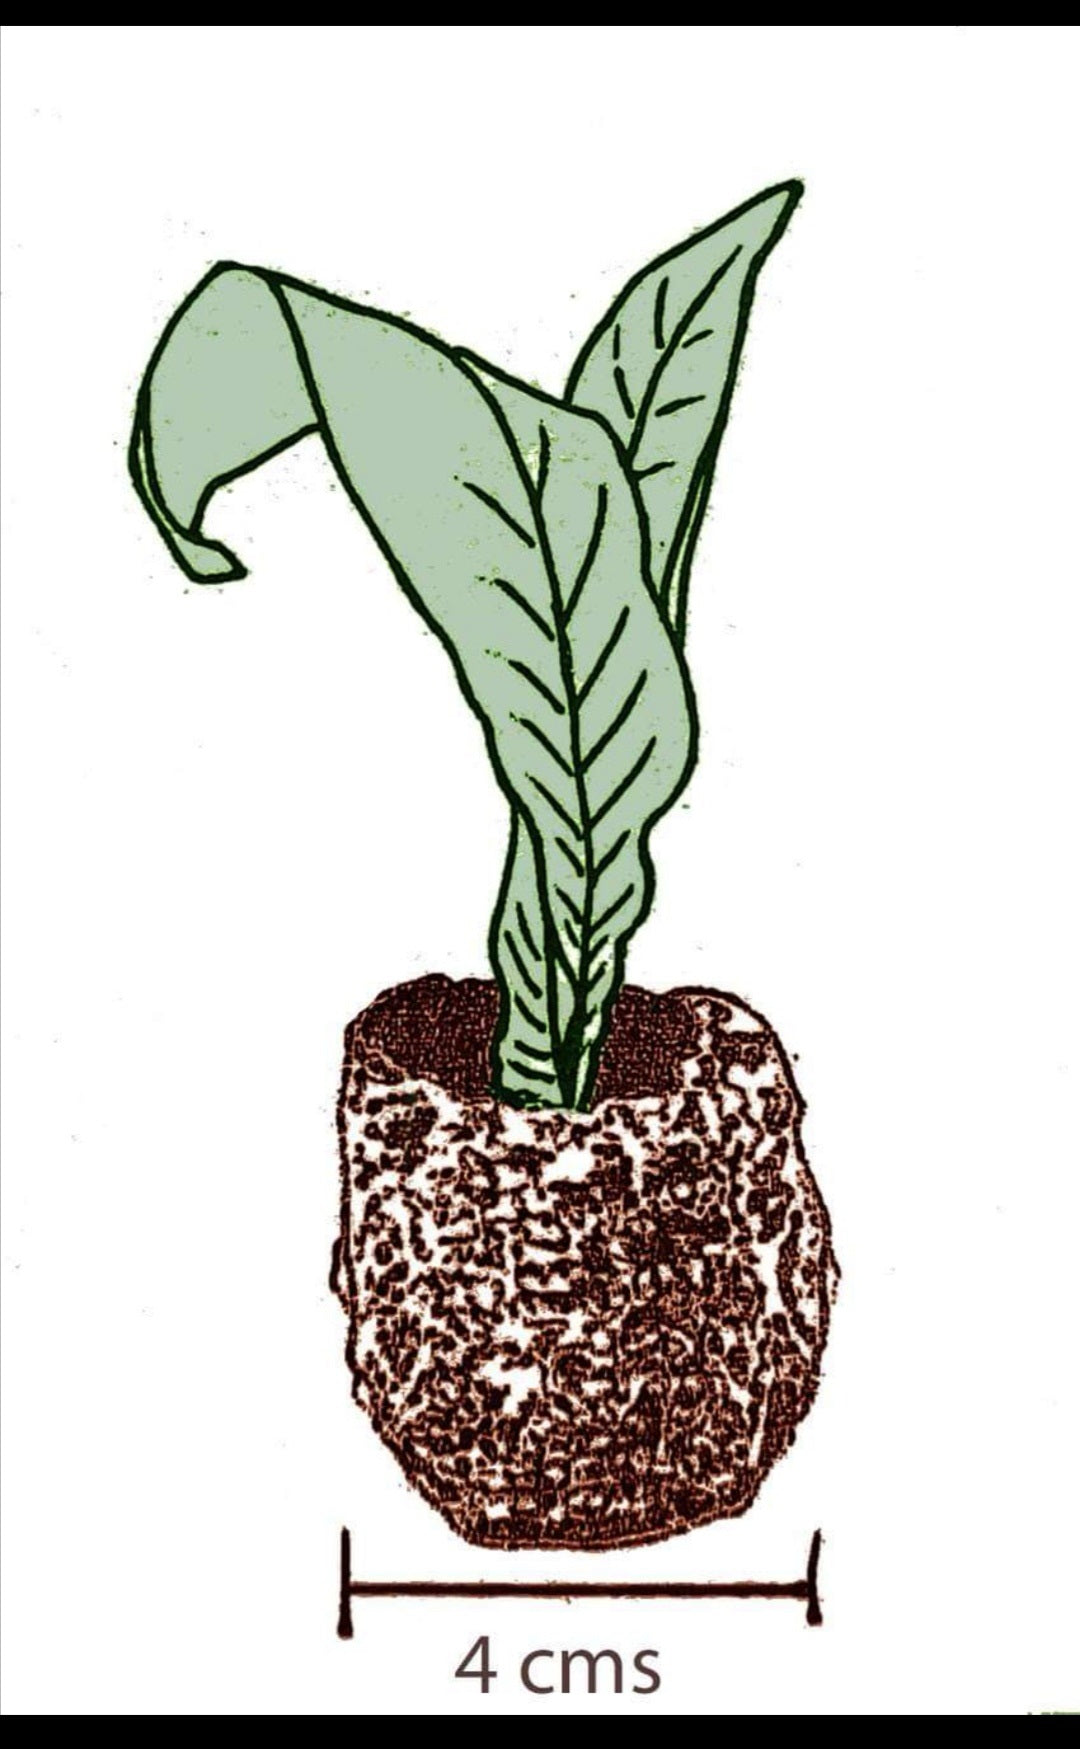 Streptocarpus rexii (white)